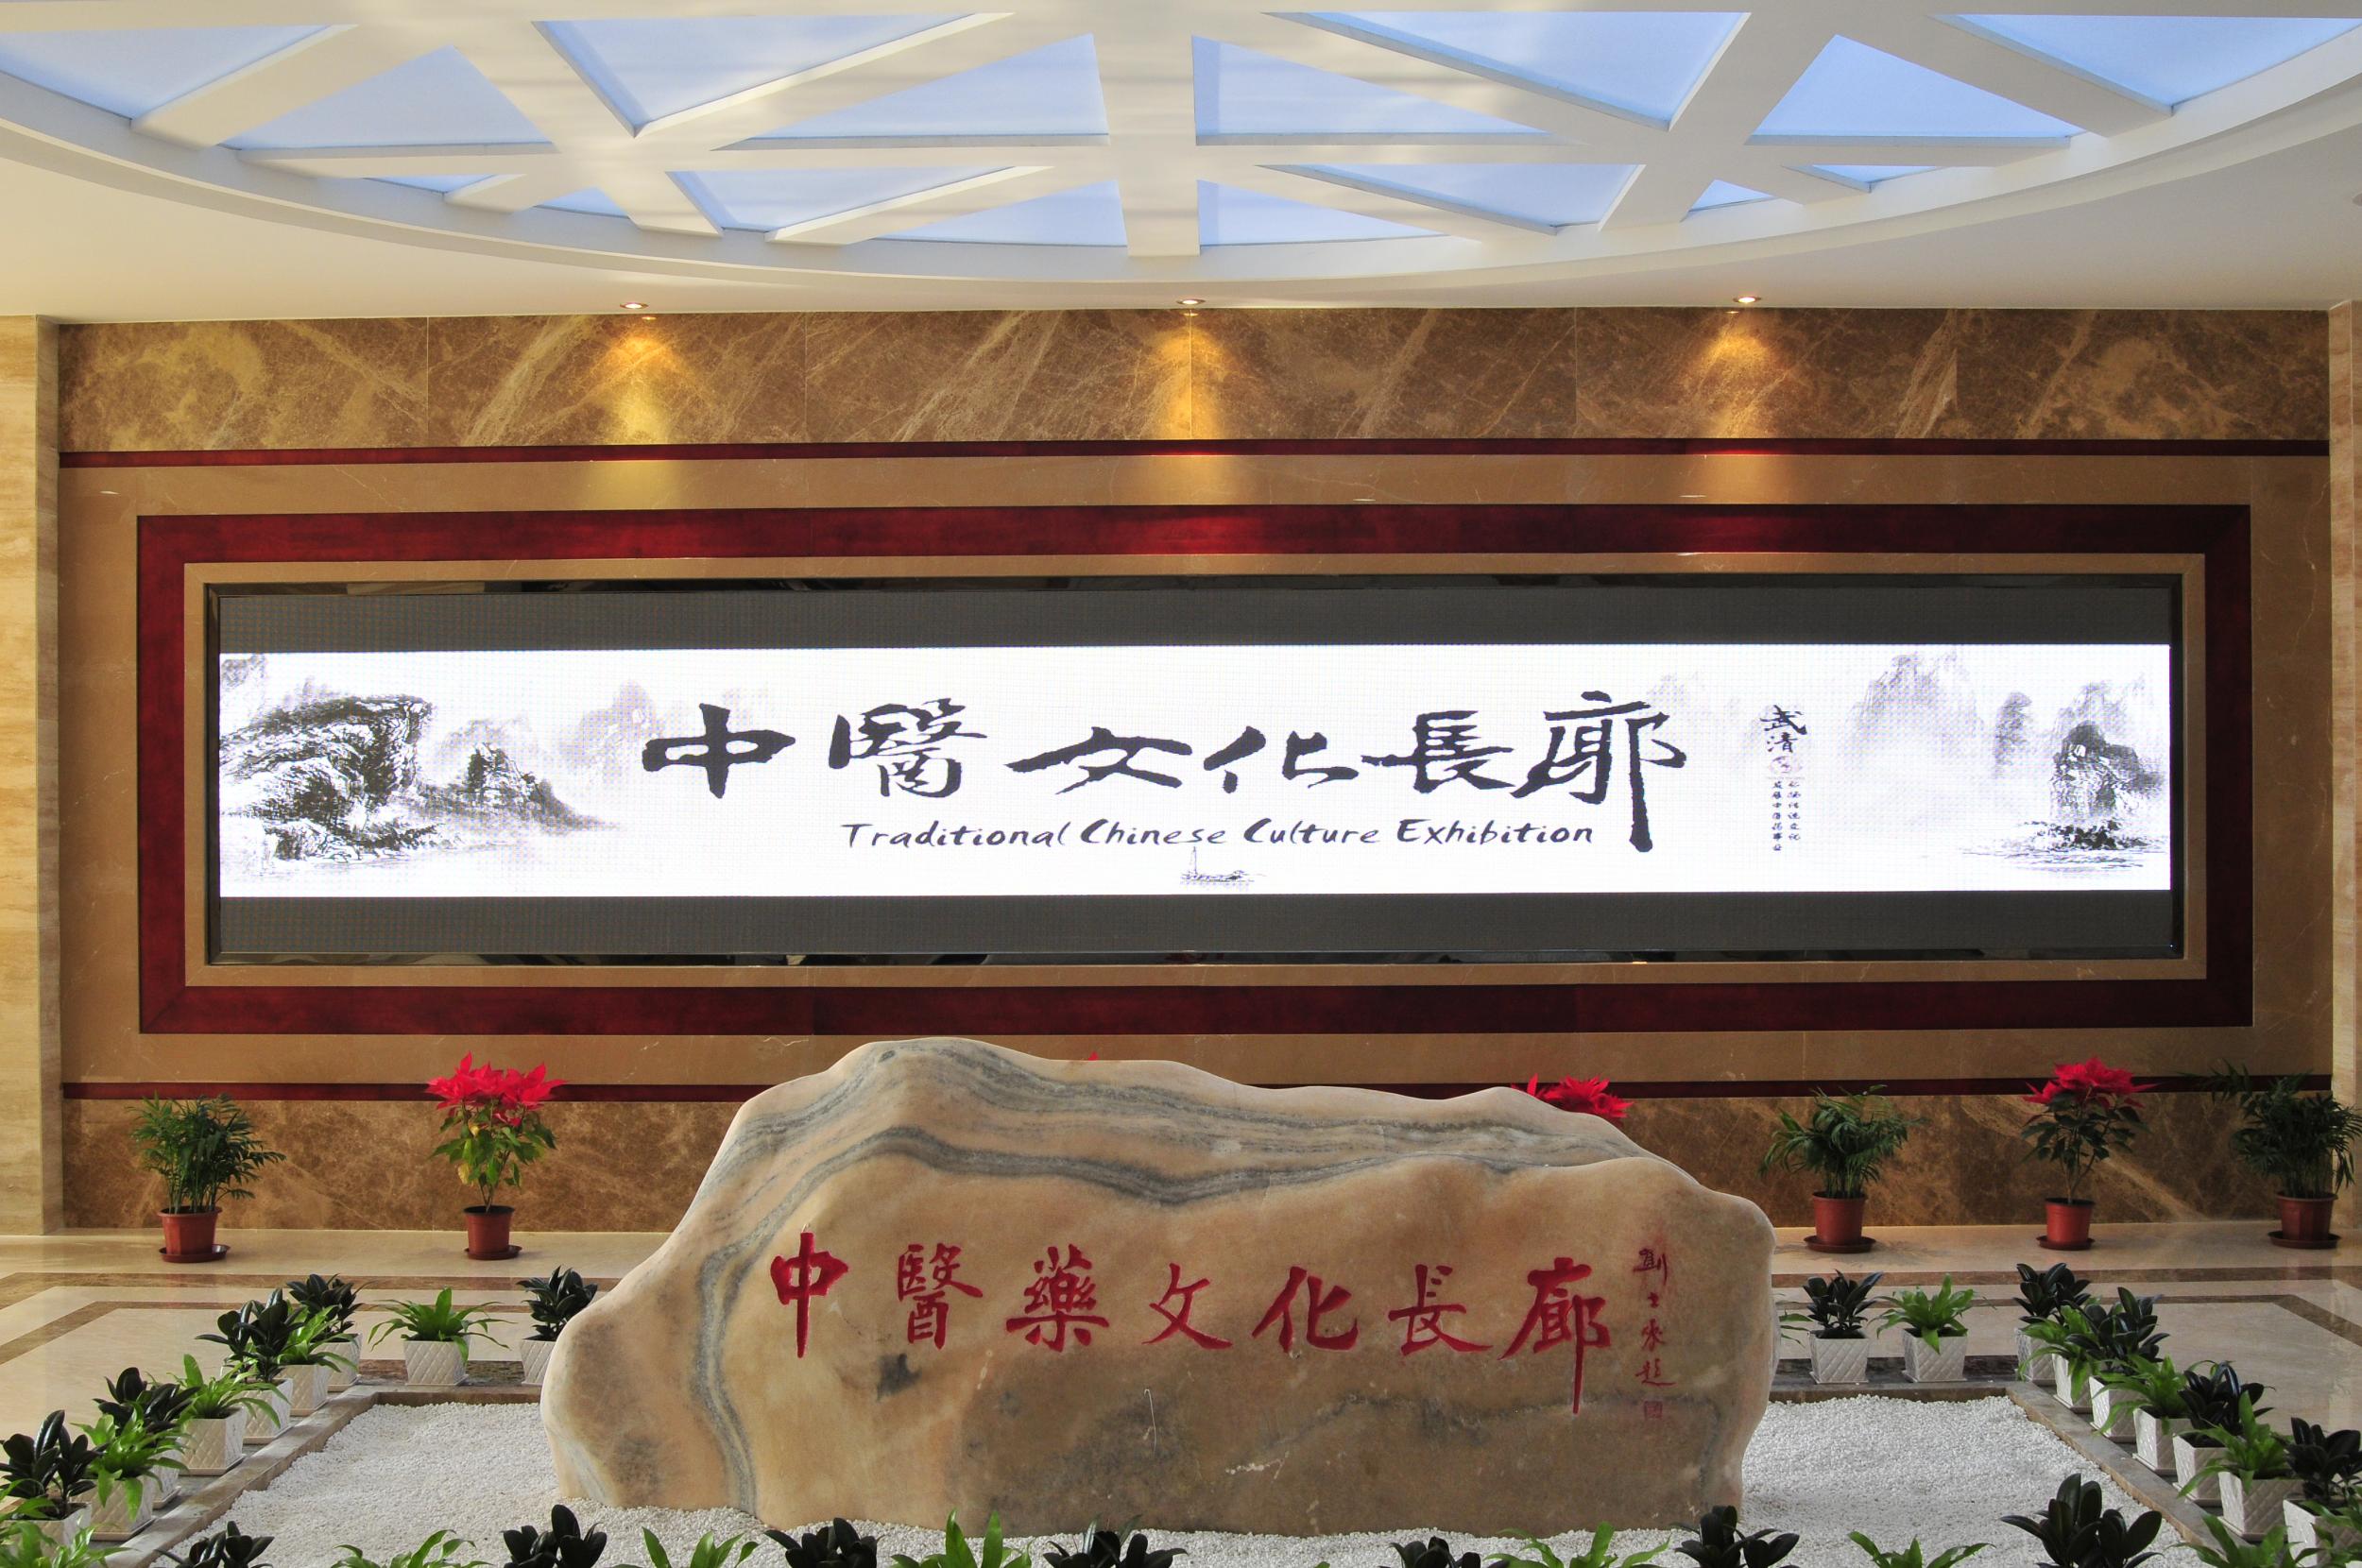 中醫藥文化長廊-入口處